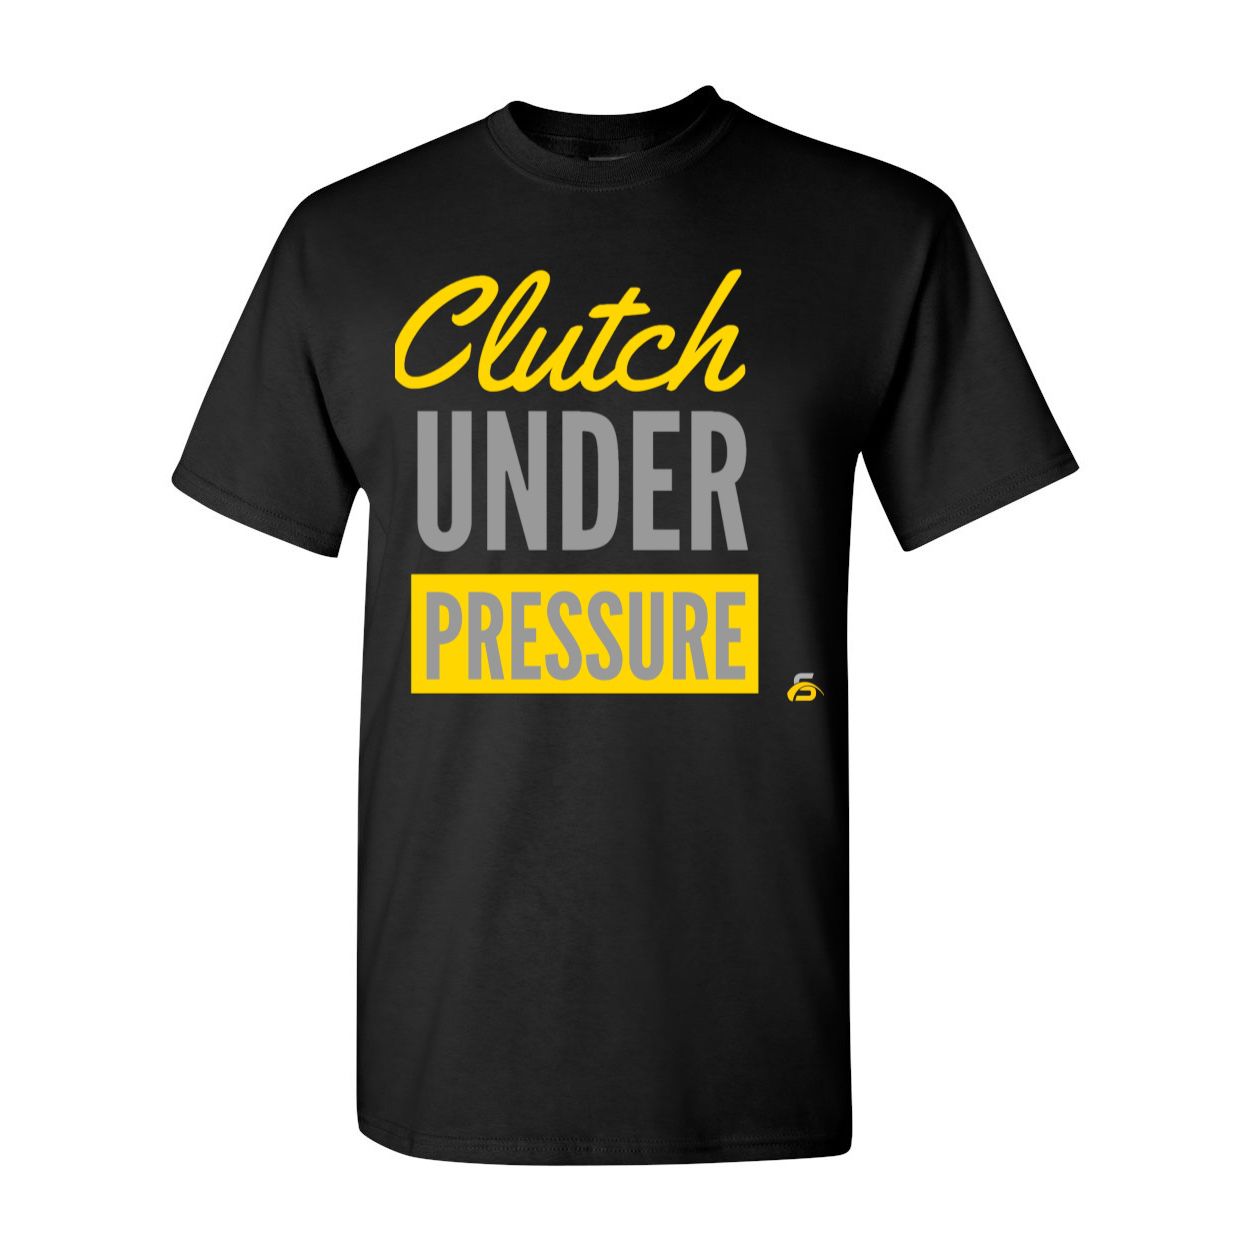 Clutch Under Pressure Tee